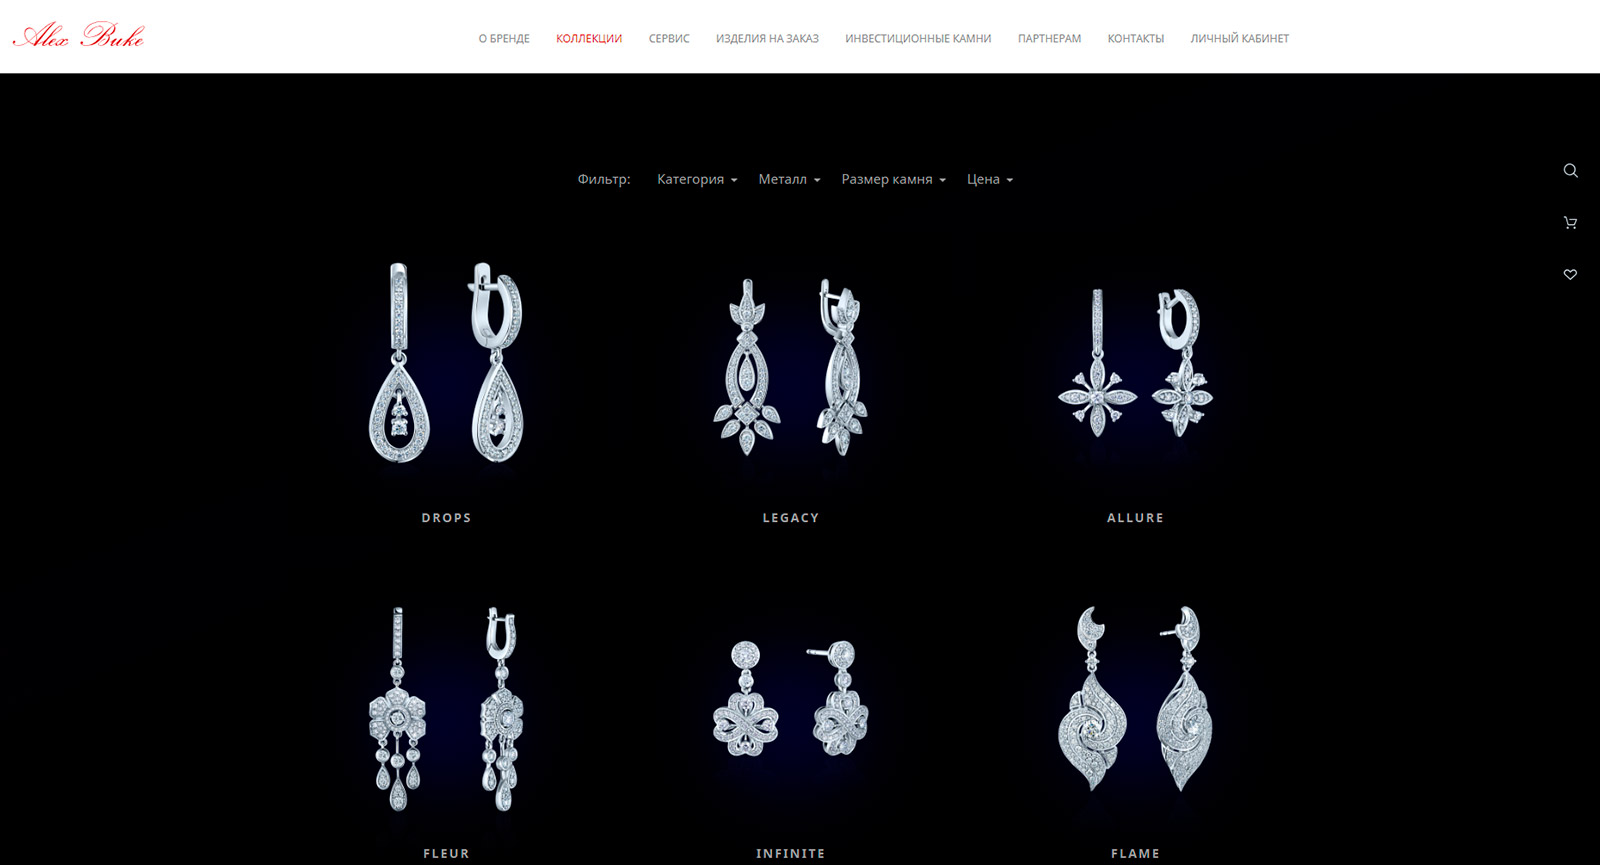 alexbuke.com — интернет-магазин компании по изготовлению ювелирных украшений.